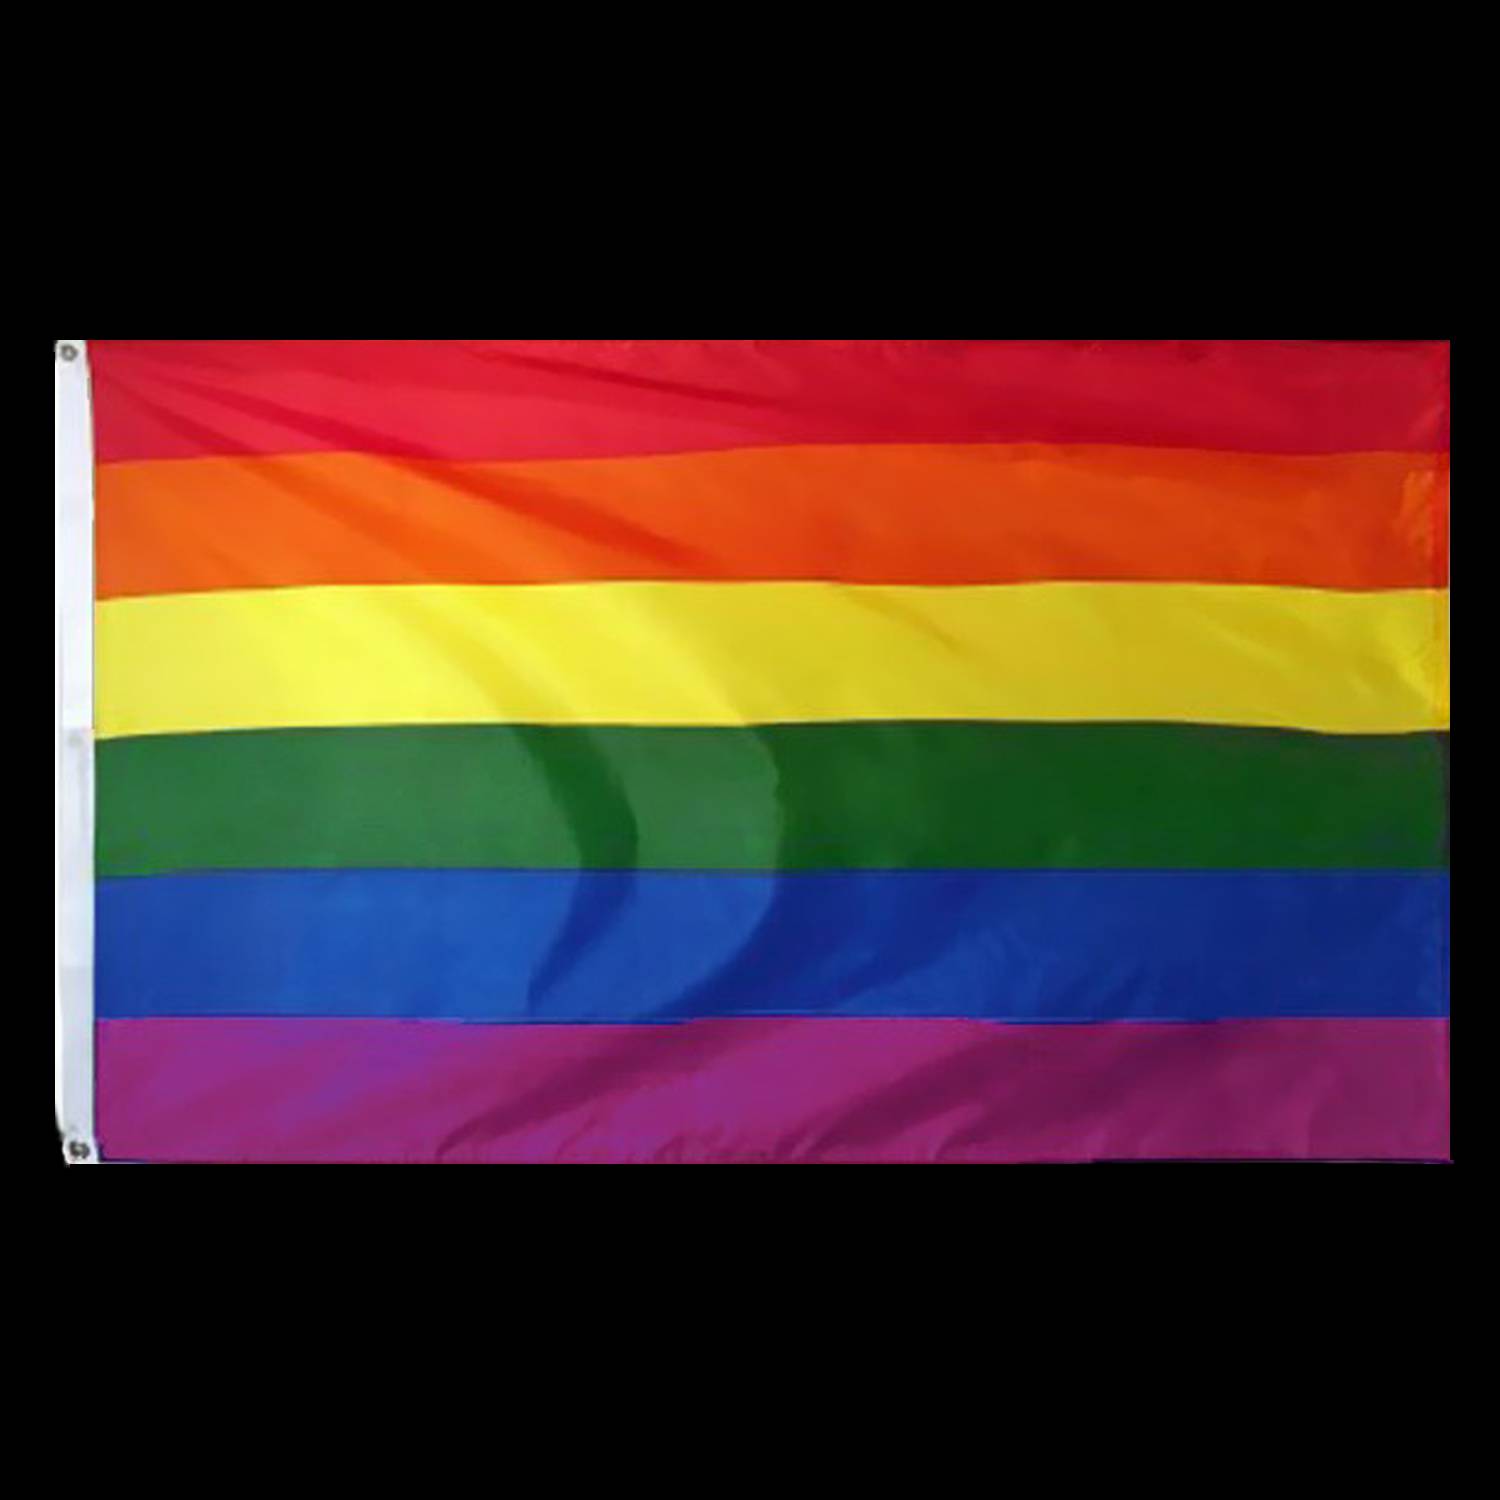 Hedendaags Naar boven Australische persoon Regenboog vlag 90x150cm kopen | De Horeca Bazaar